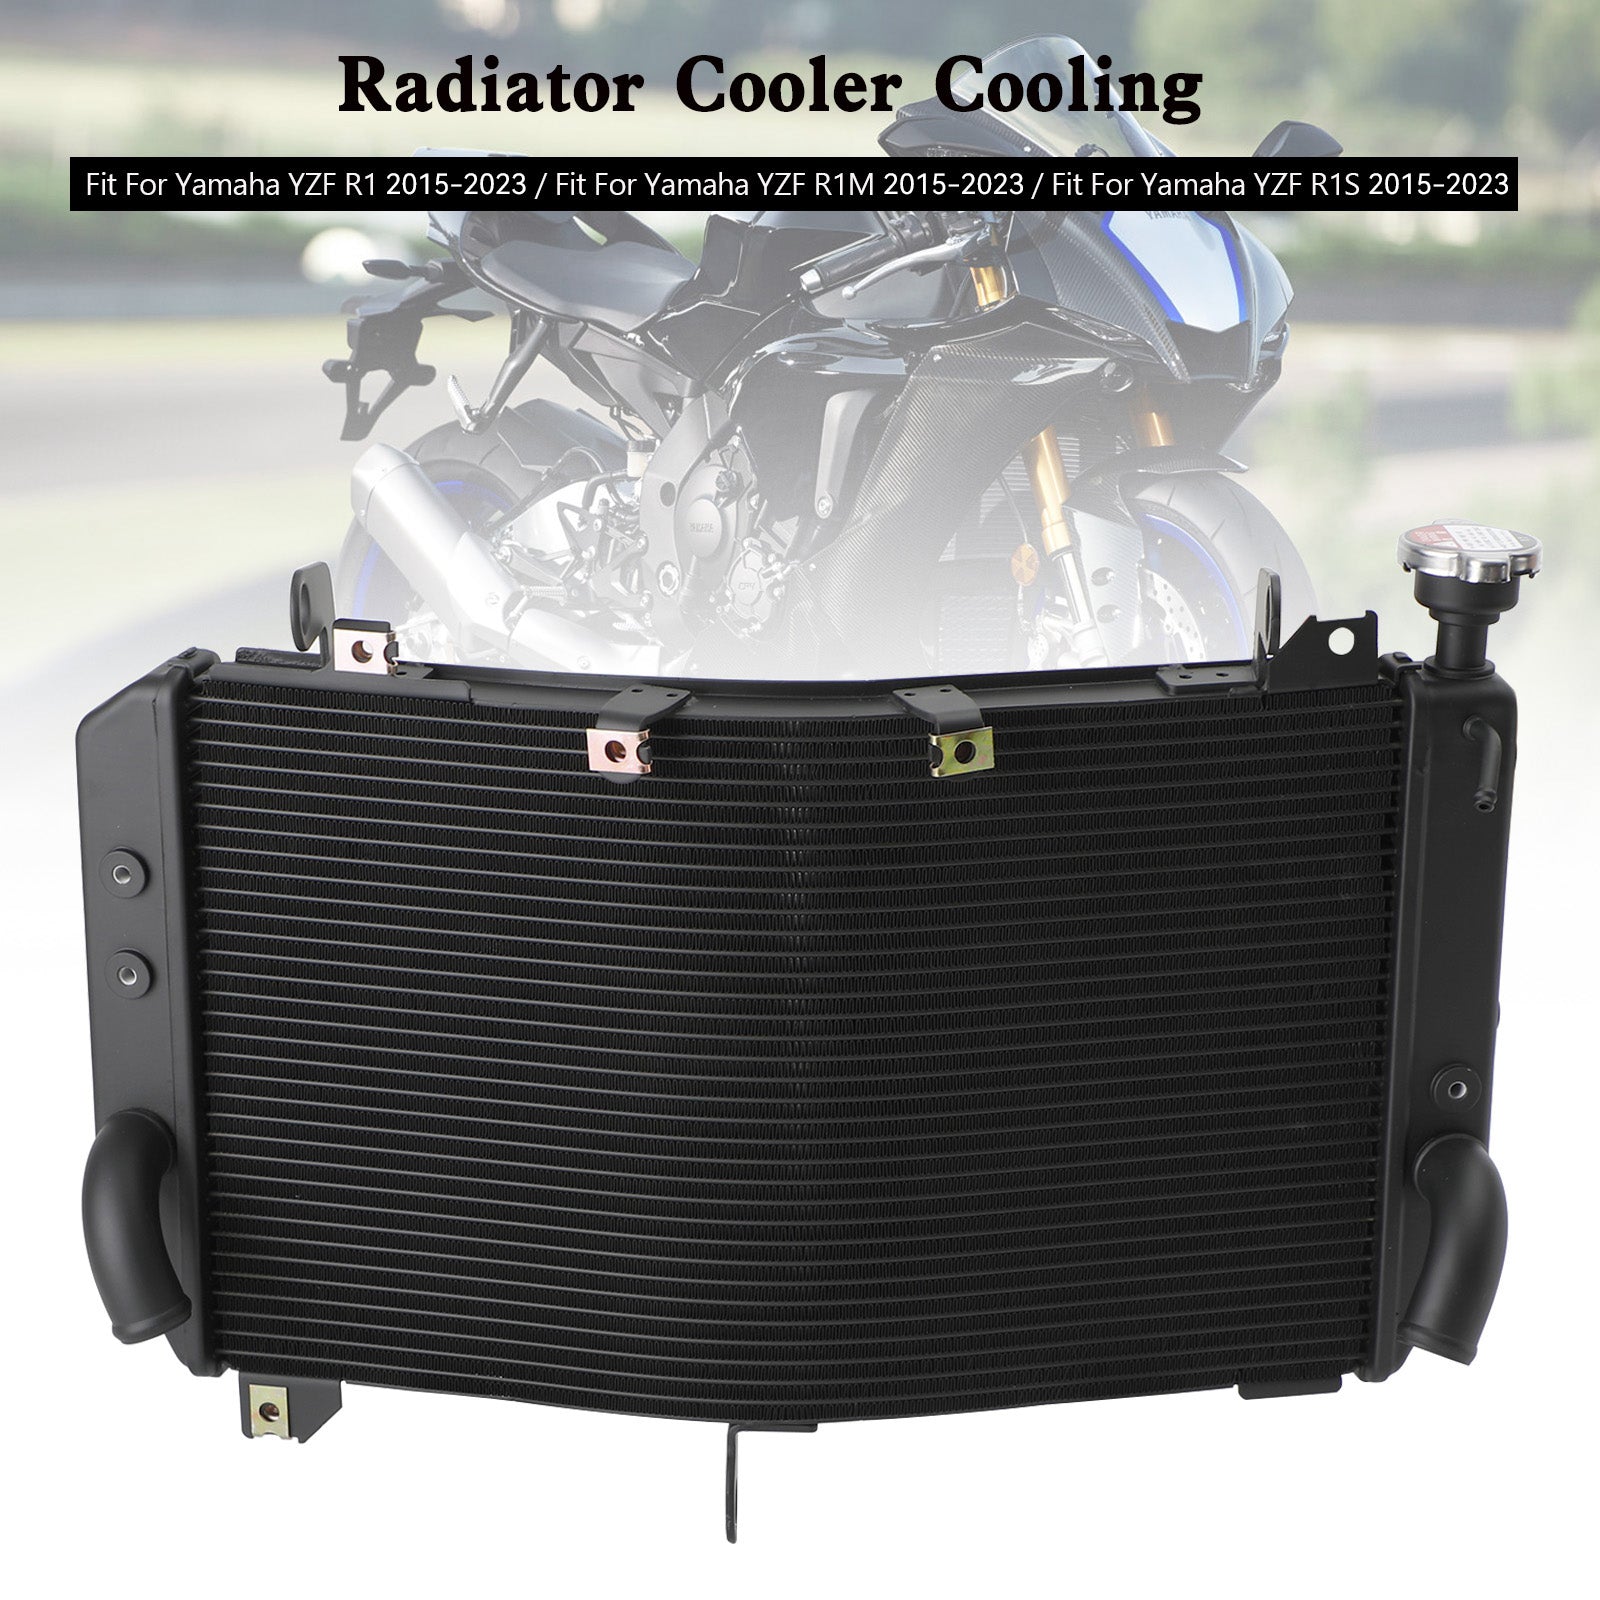 Enfriador de radiador de aluminio de refrigeración para Yamaha YZF R1 R1M R1S 2015-2023